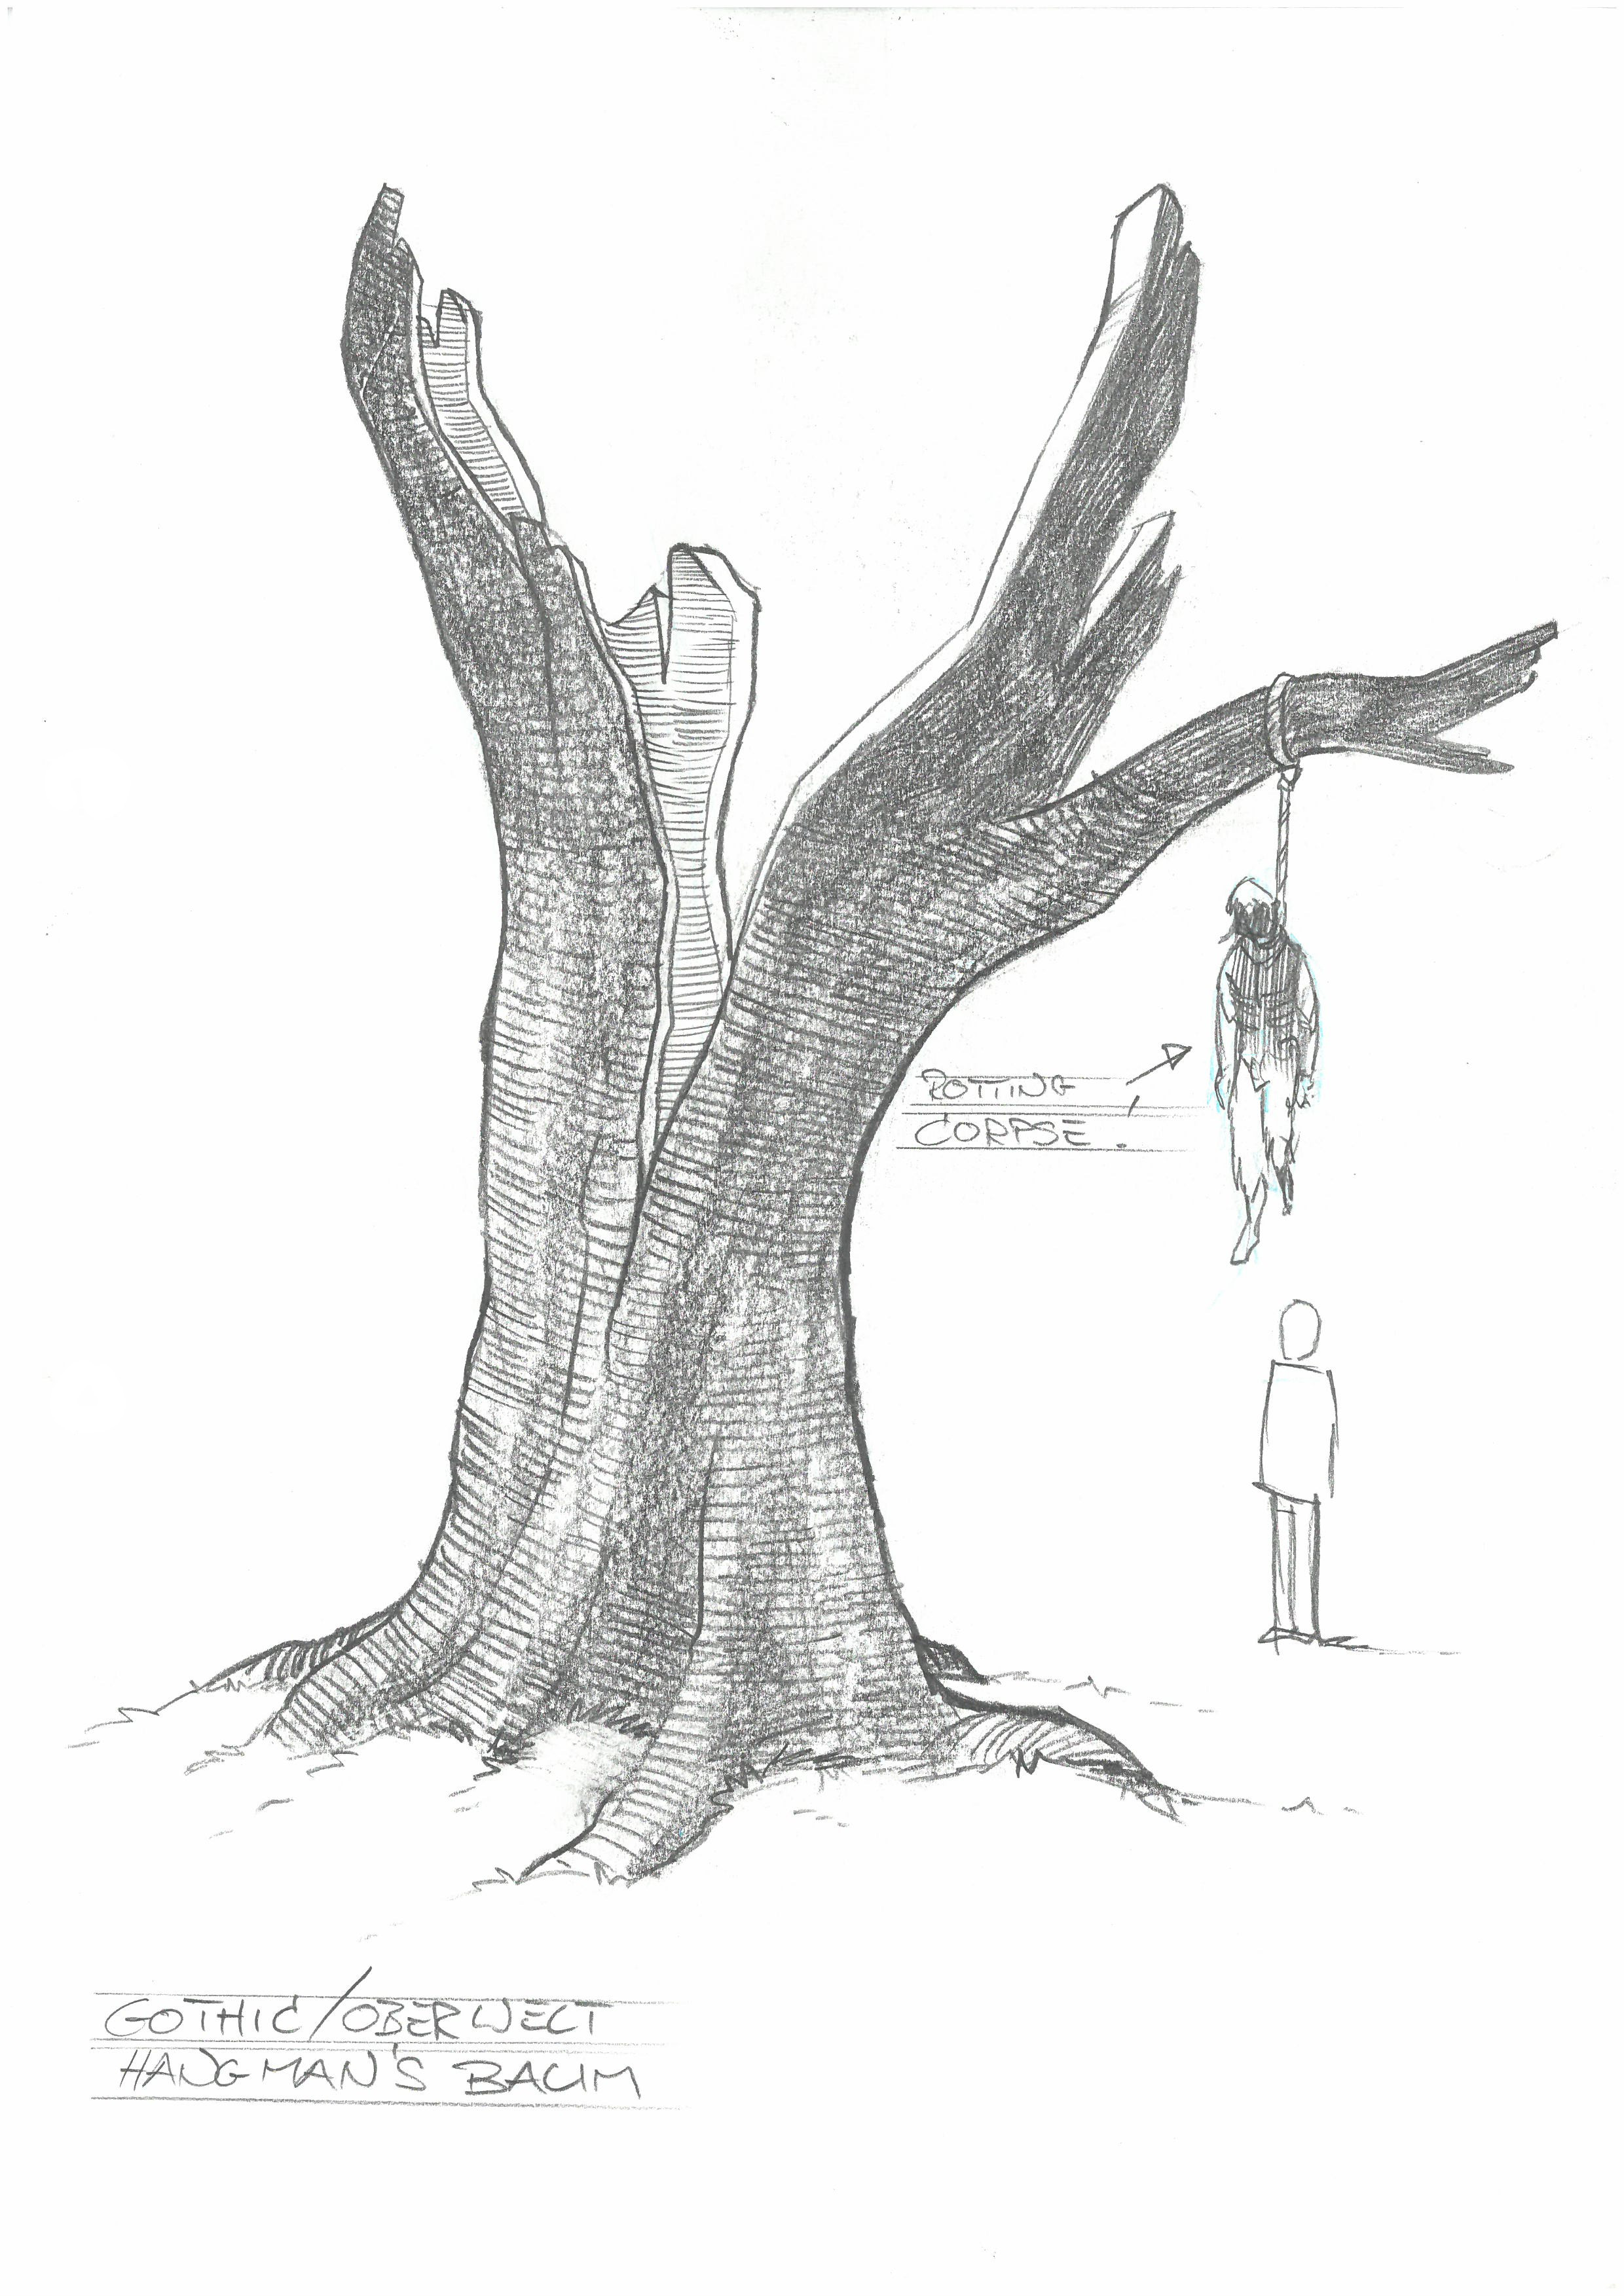 Hangman's Baum